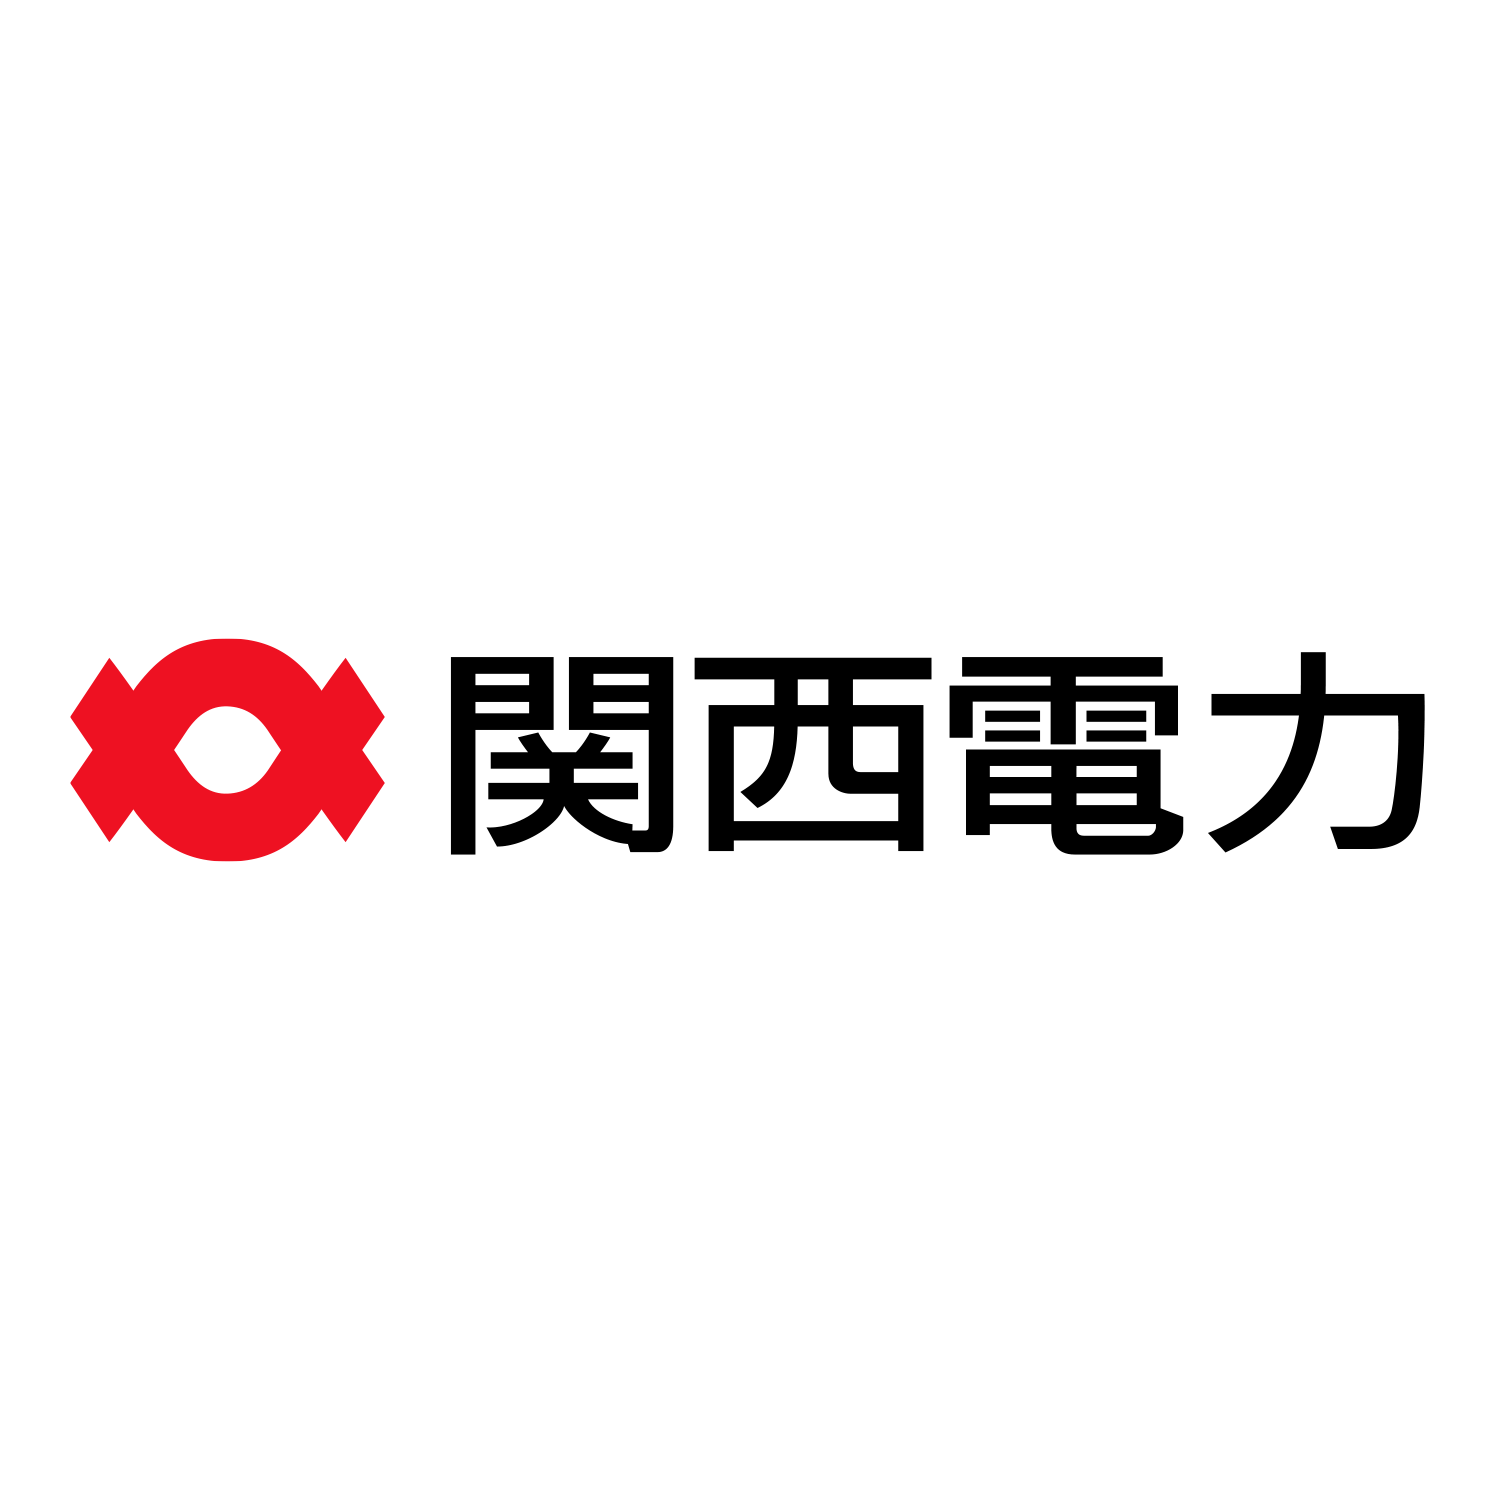 関西電力 株式会社